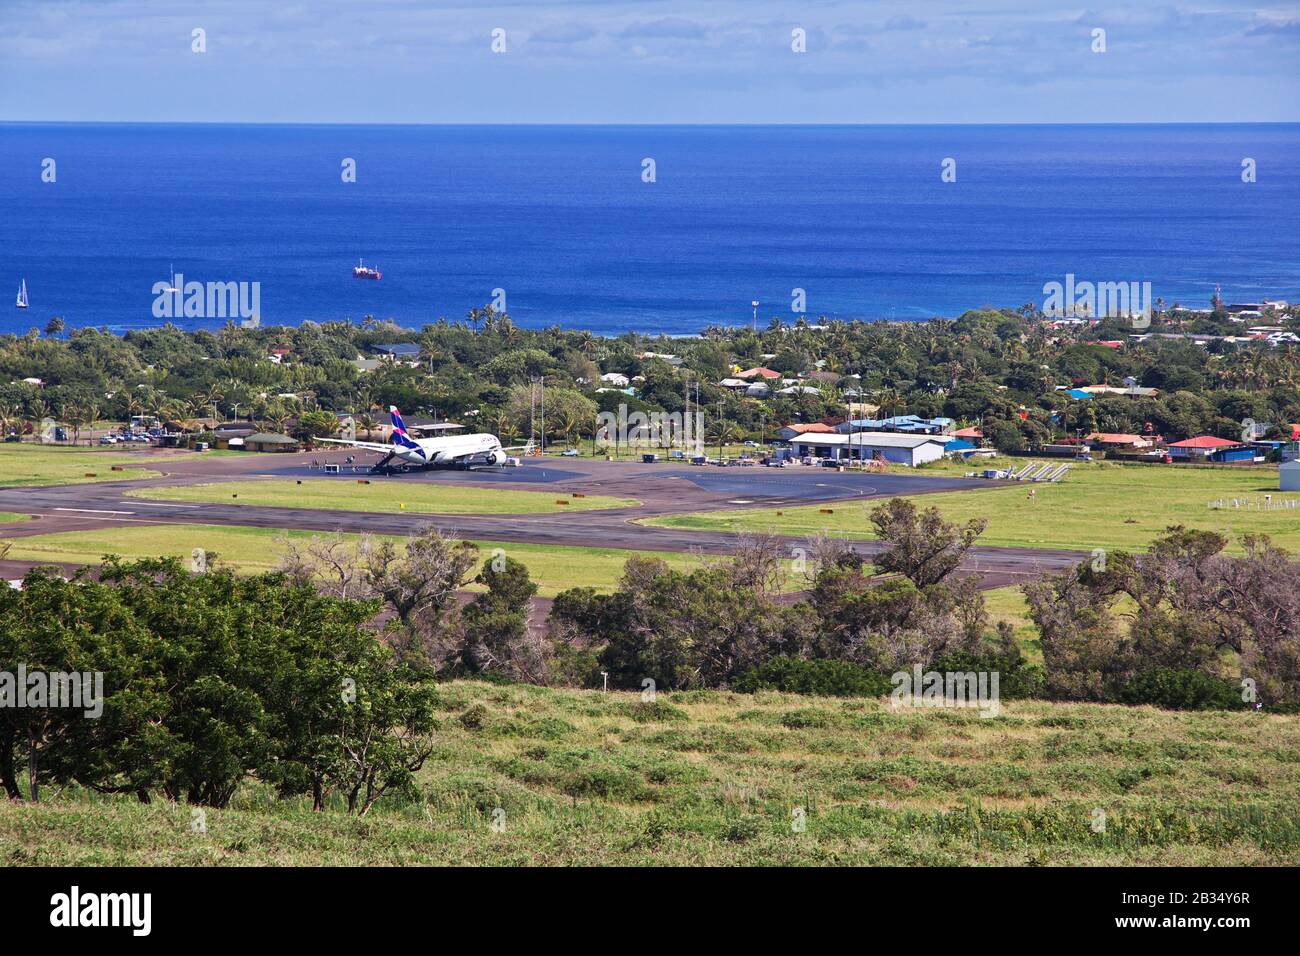 Isola Di Pasqua / Cile - 28 Dicembre 2019: Rapa Nui. La vista sull'aeroporto di Hanga Roa, Isola di Pasqua, Cile Foto Stock